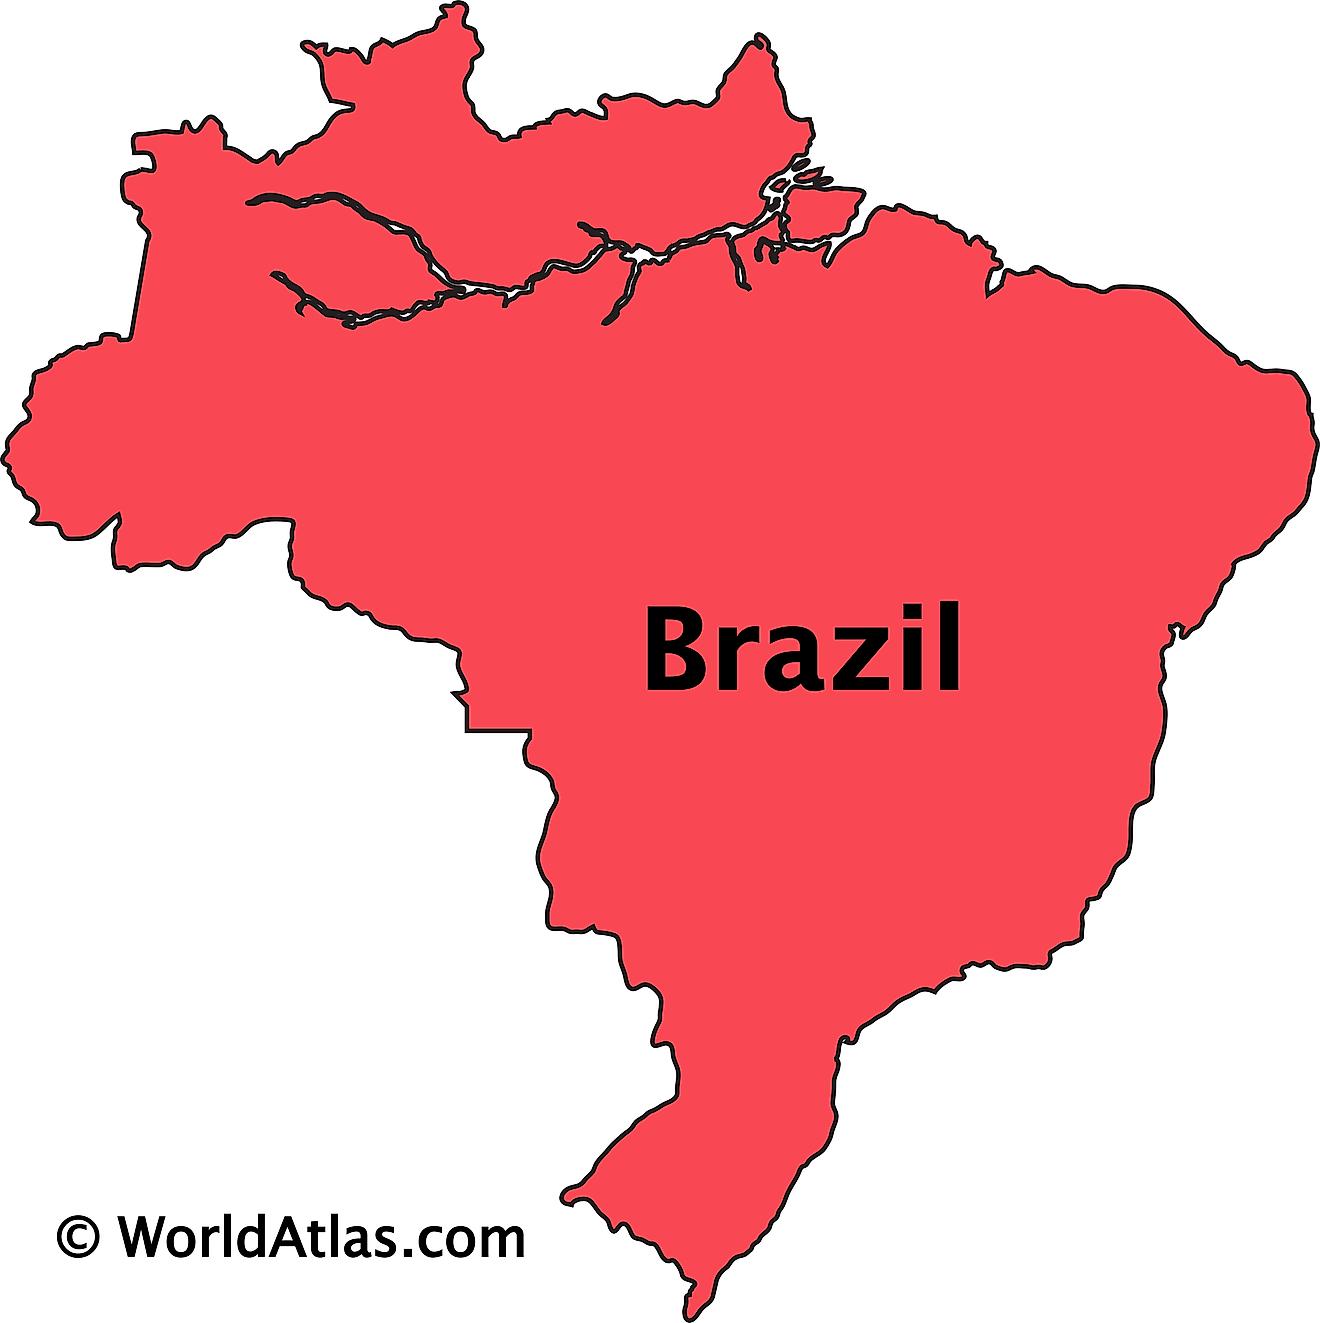 Porto Alegre - The Capital Of The Rio Grande do Sul State Of Brazil -  WorldAtlas